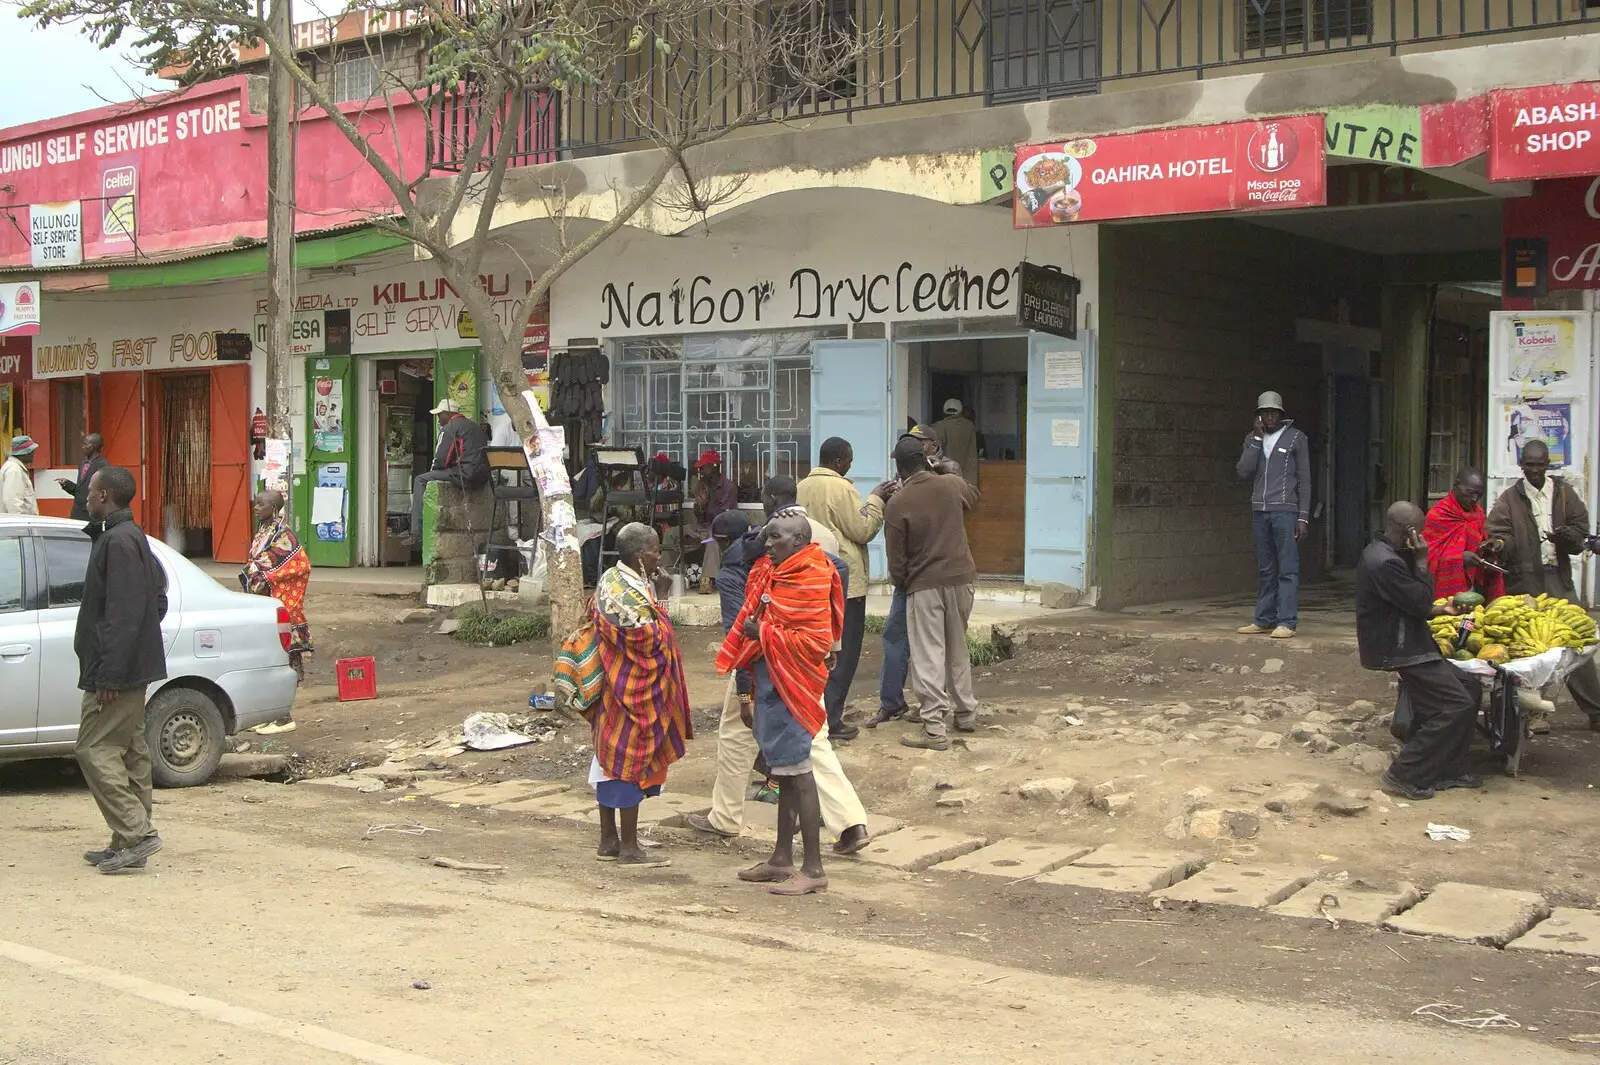 Naibor Drycleaners, from Nairobi and the Road to Maasai Mara, Kenya, Africa - 1st November 2010